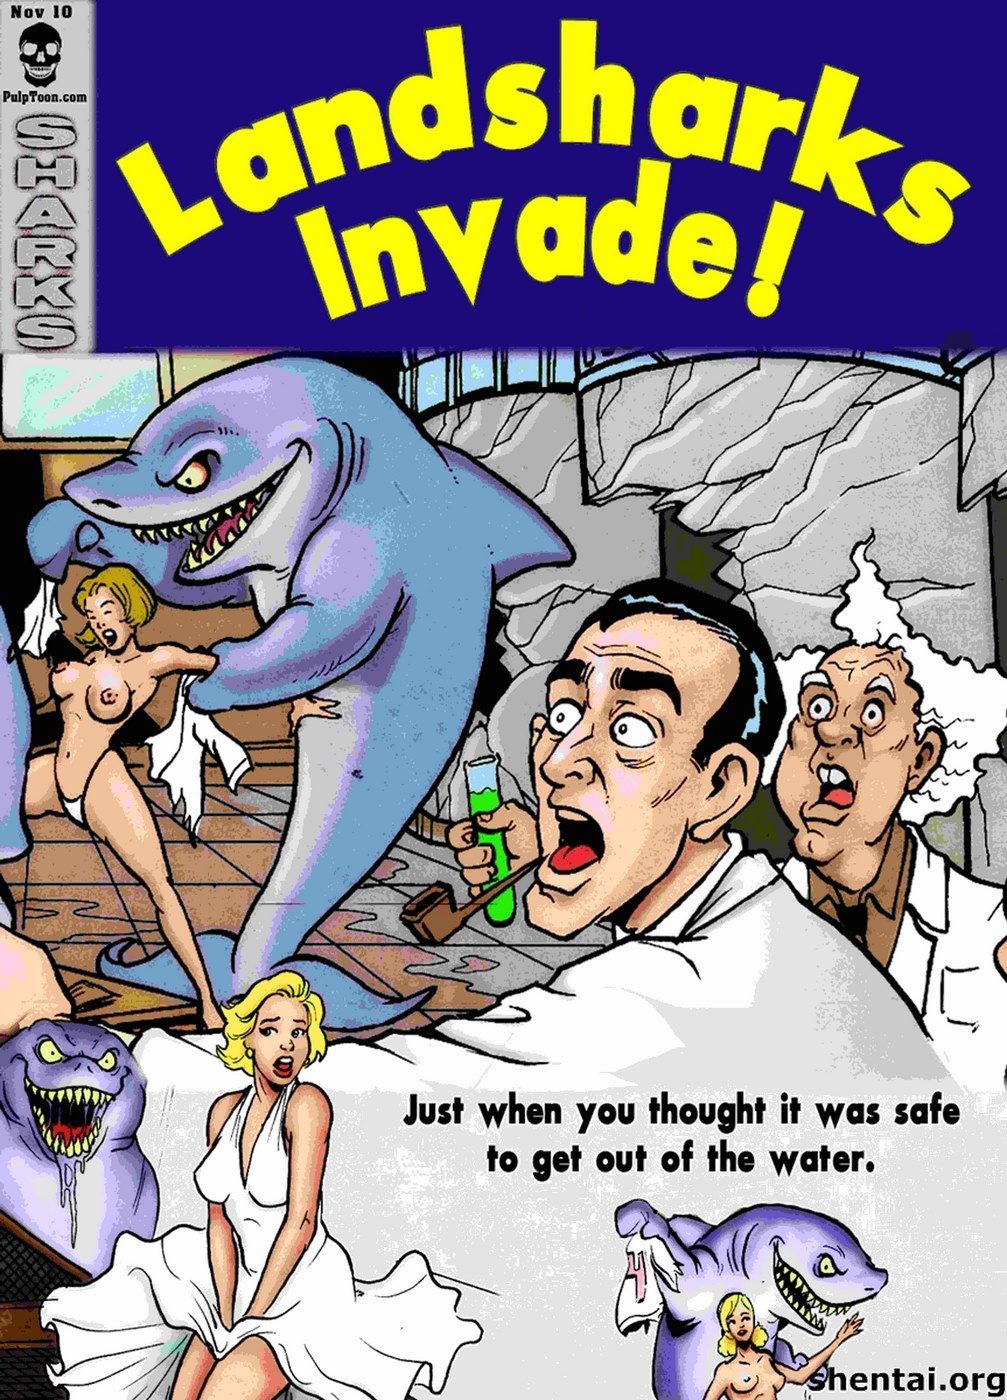 Adventure Adult-Landsharks Invade page 1